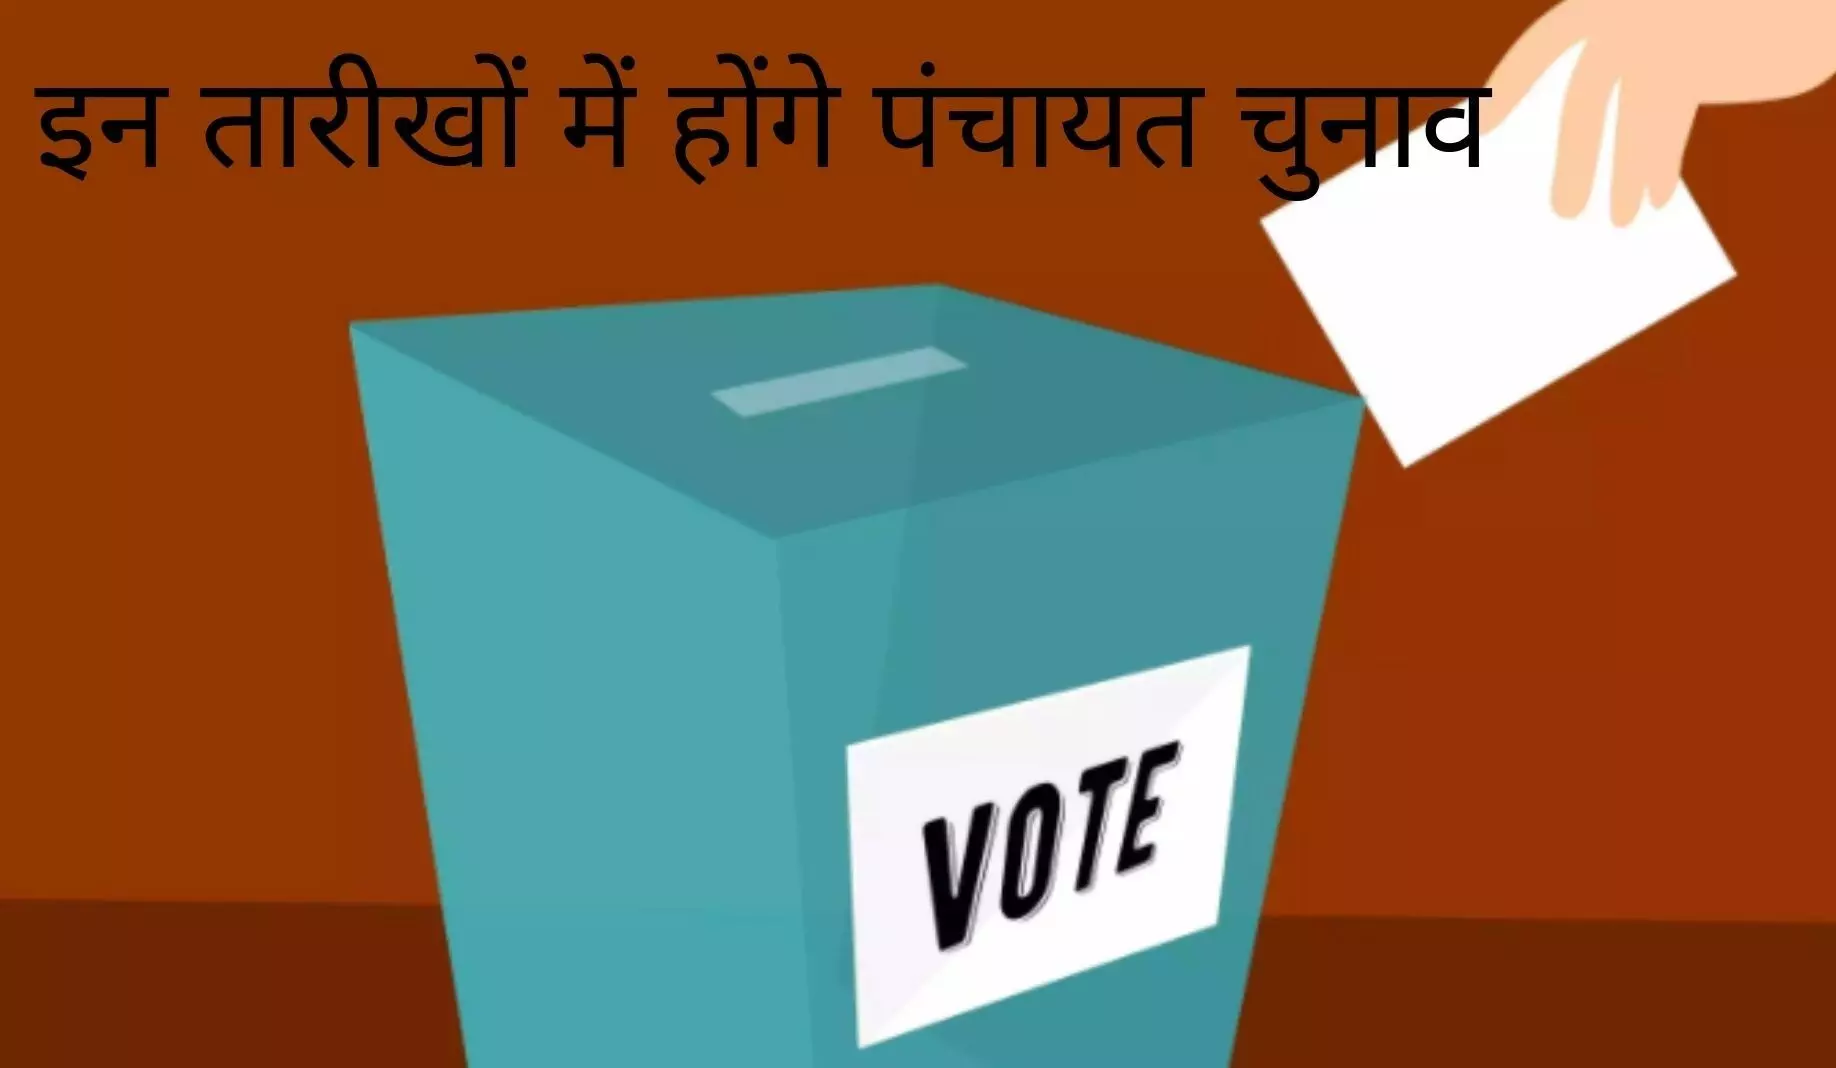 मध्य प्रदेश पंचायत चुनाव: पंचायतों का कार्यकाल खत्म होने के 21 माह बाद होंगे चुनाव, 39551811 मतदाता चुनेंगे गांव की सरकार